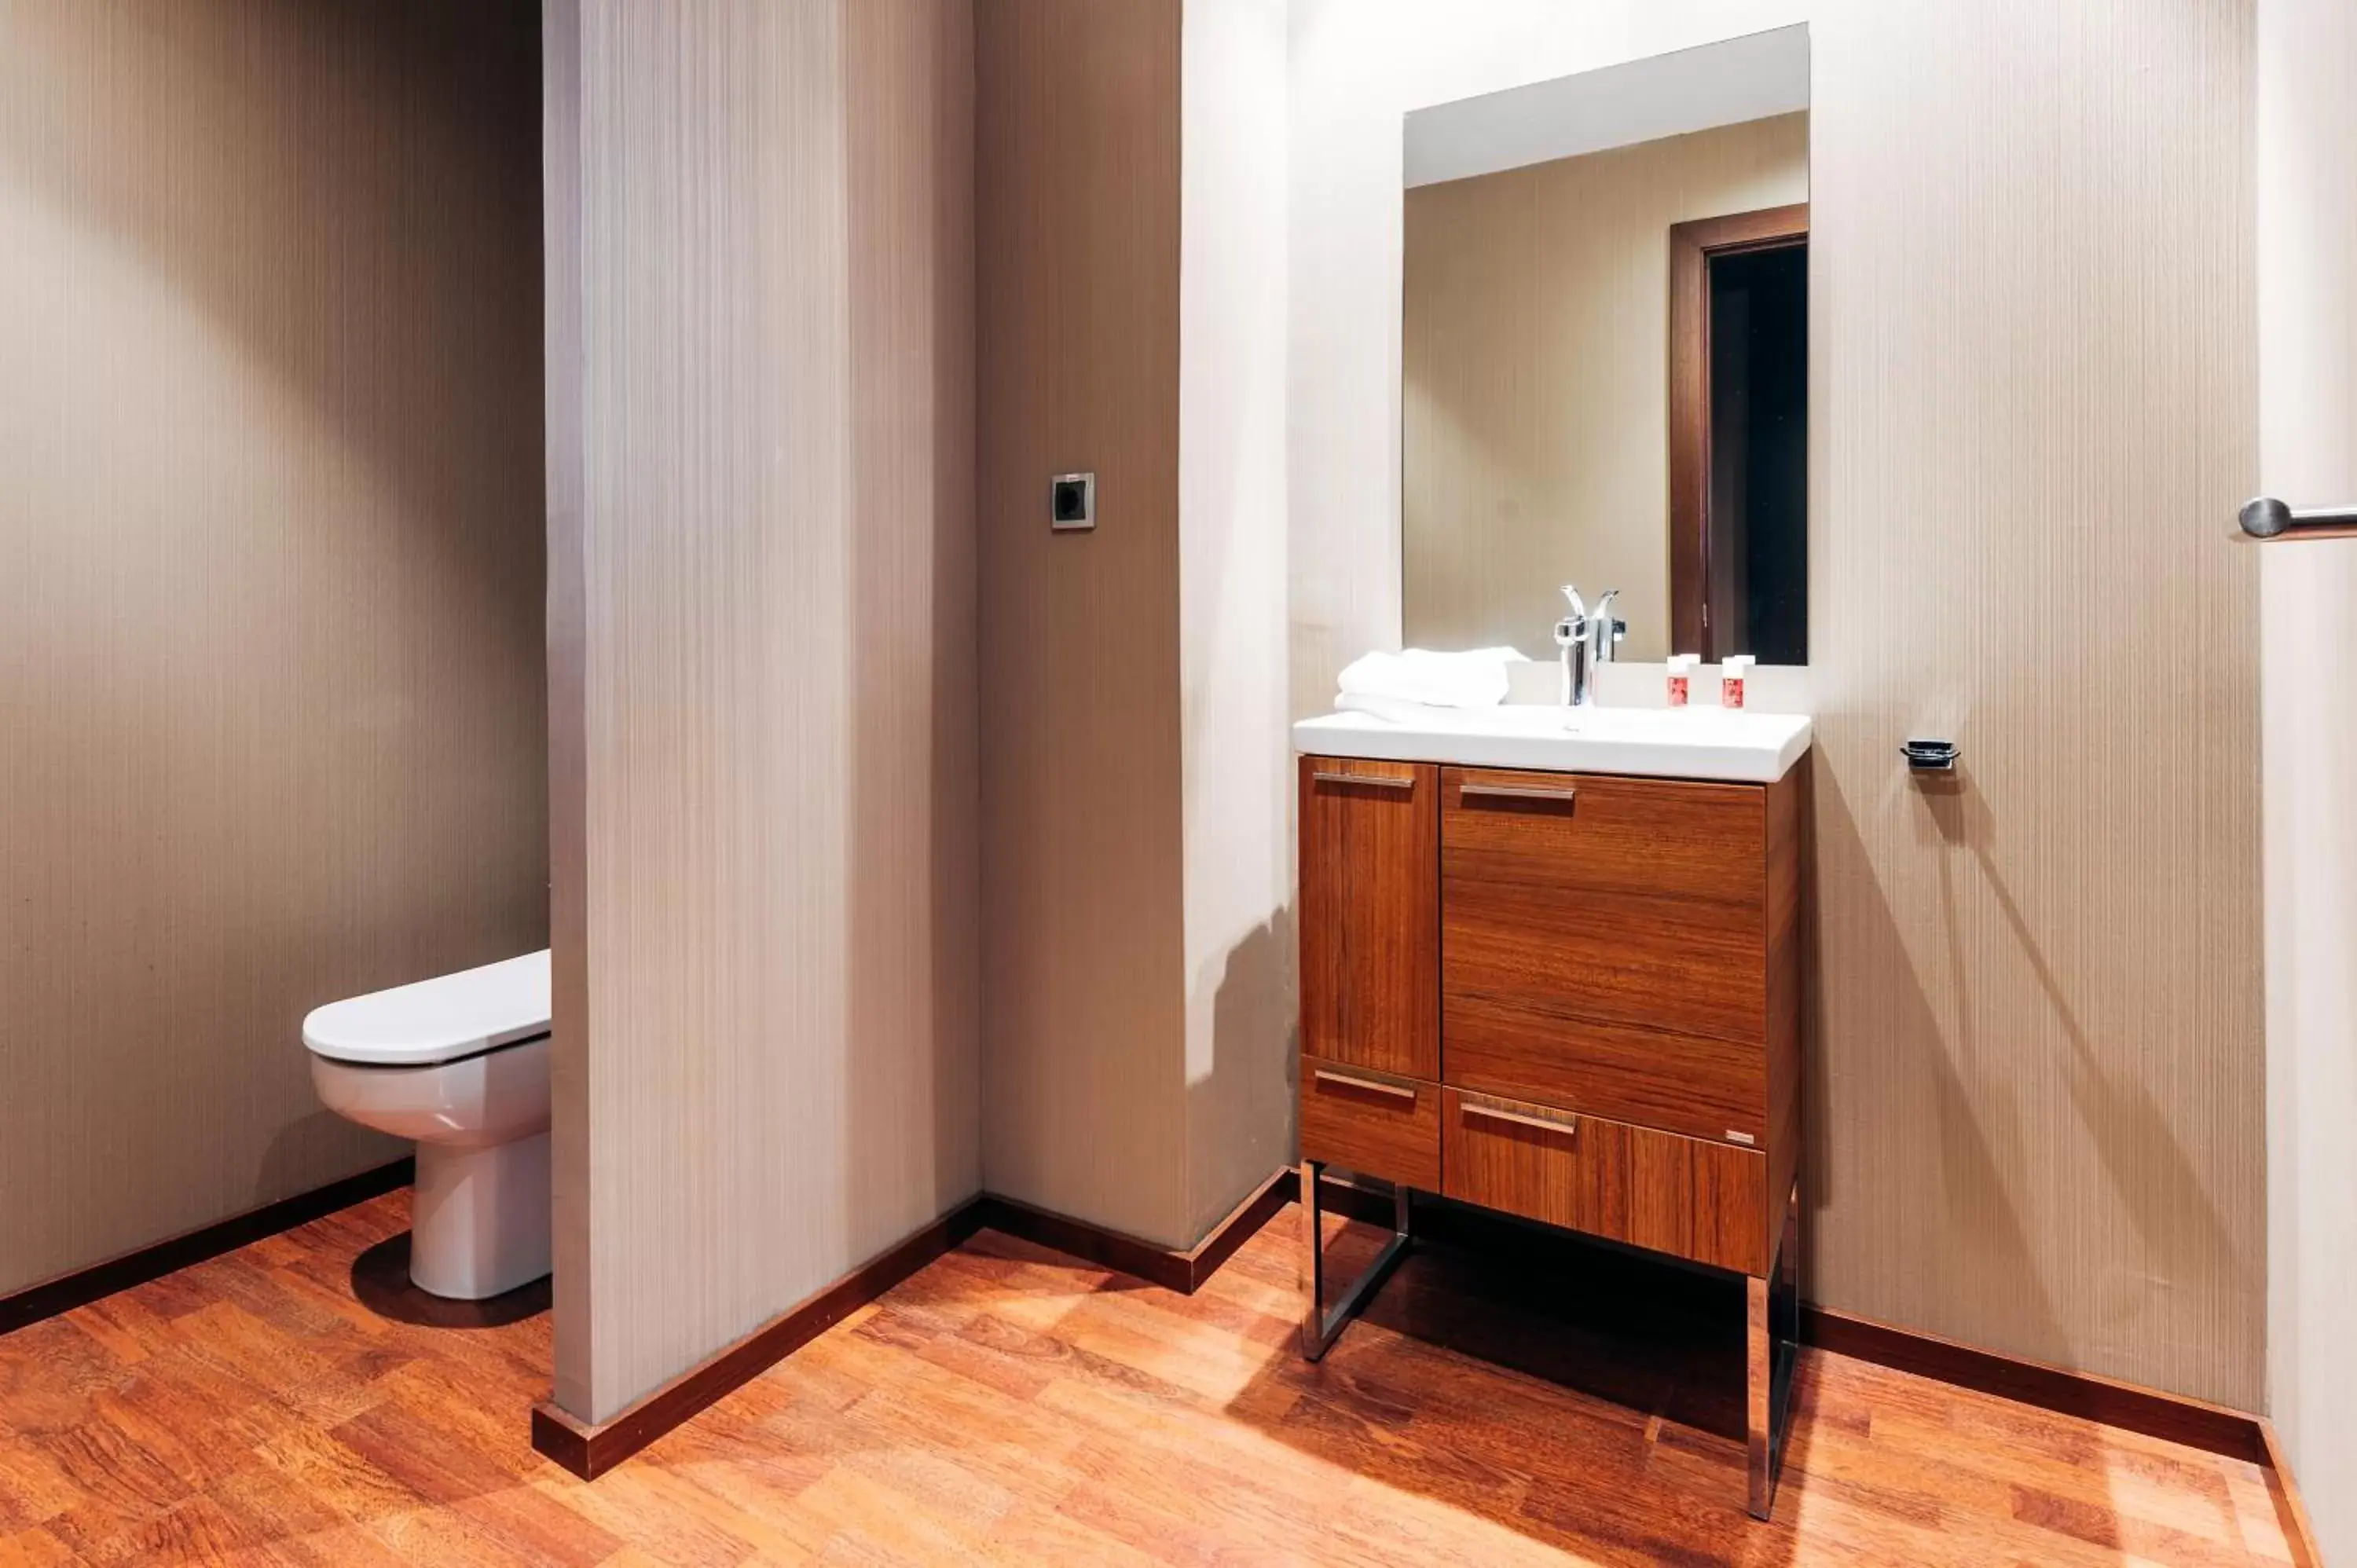 Toilet, Bathroom in AZZ Valencia Congress Hotel & Spa